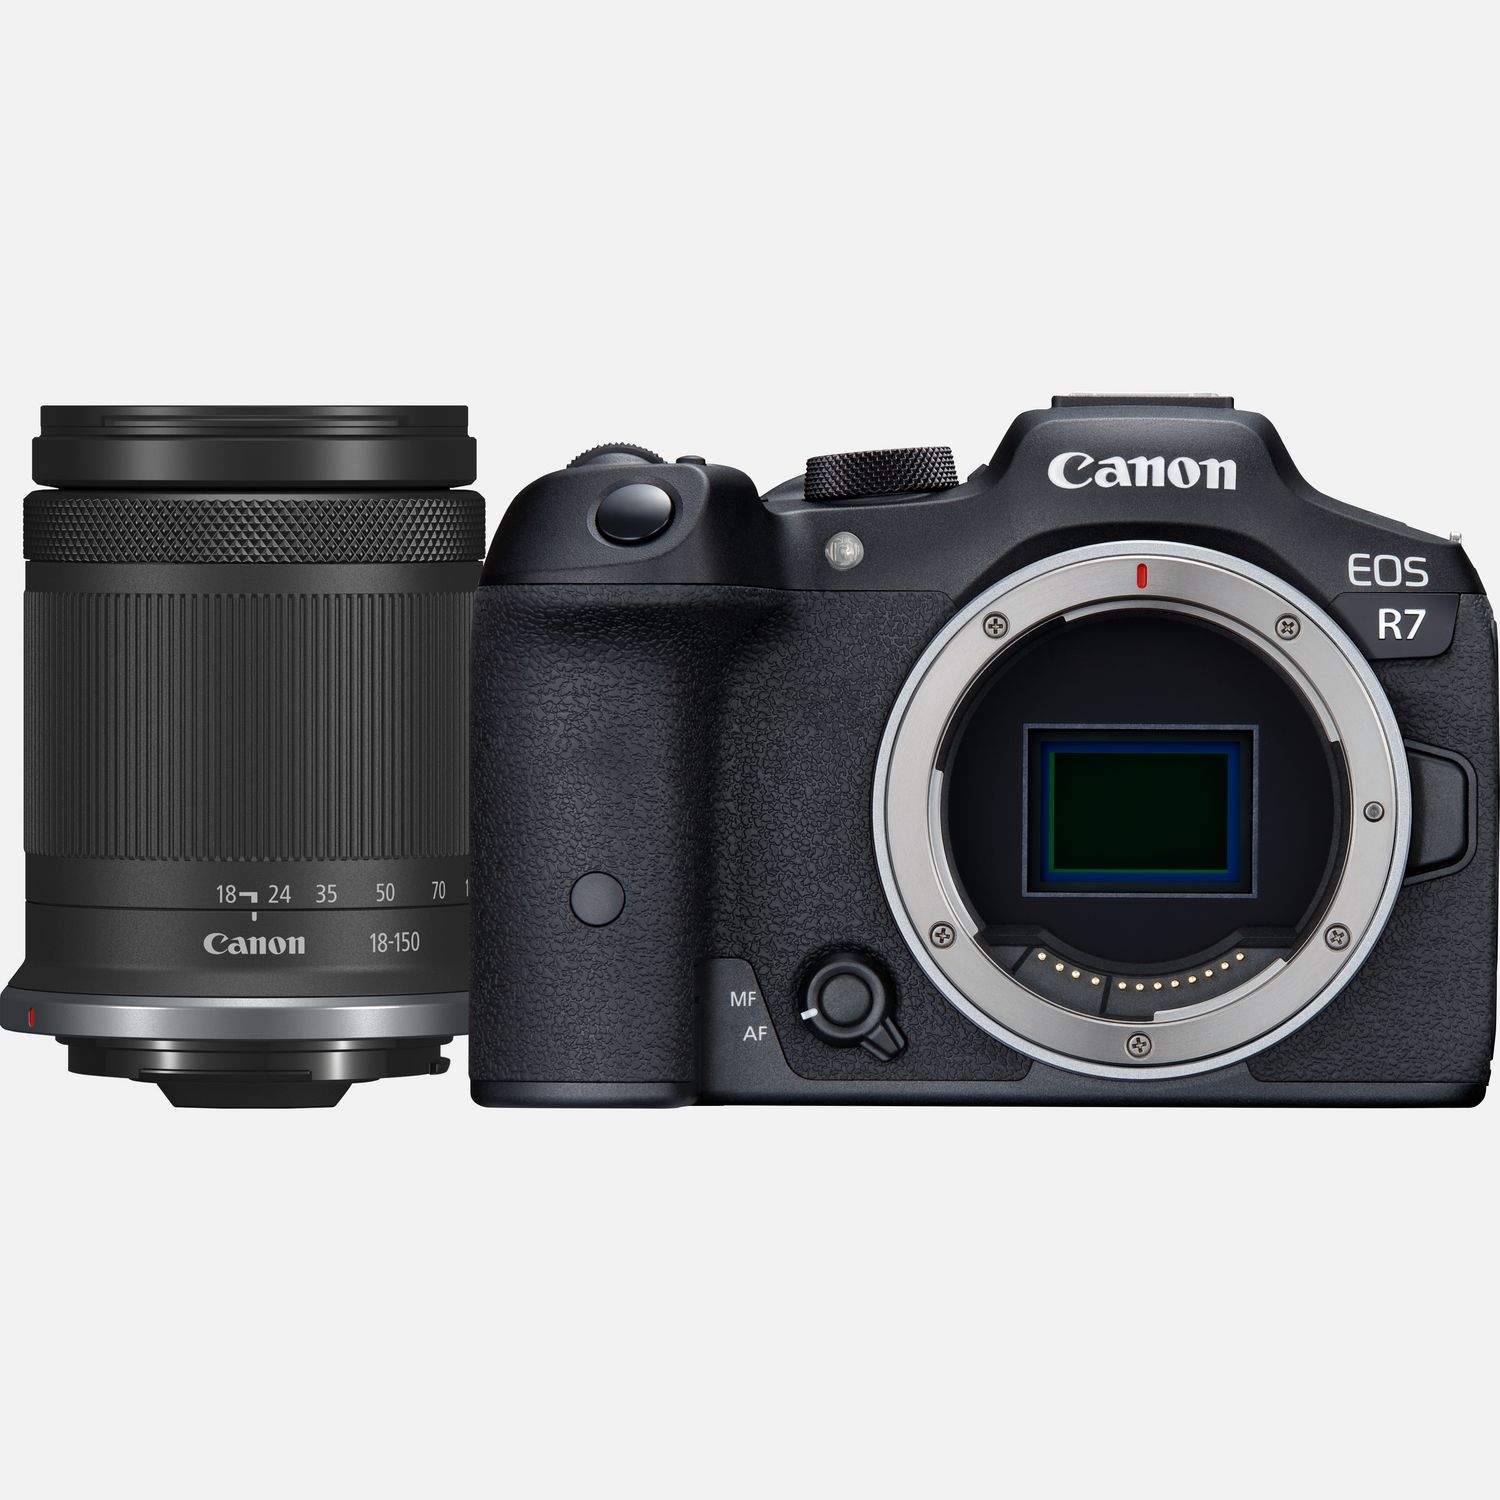 — Schweiz WLAN-Kameras RF-S Objektiv F3.5-6.3 18-150mm IS Buy STM R7 in Canon Canon EOS + Shop Systemkamera